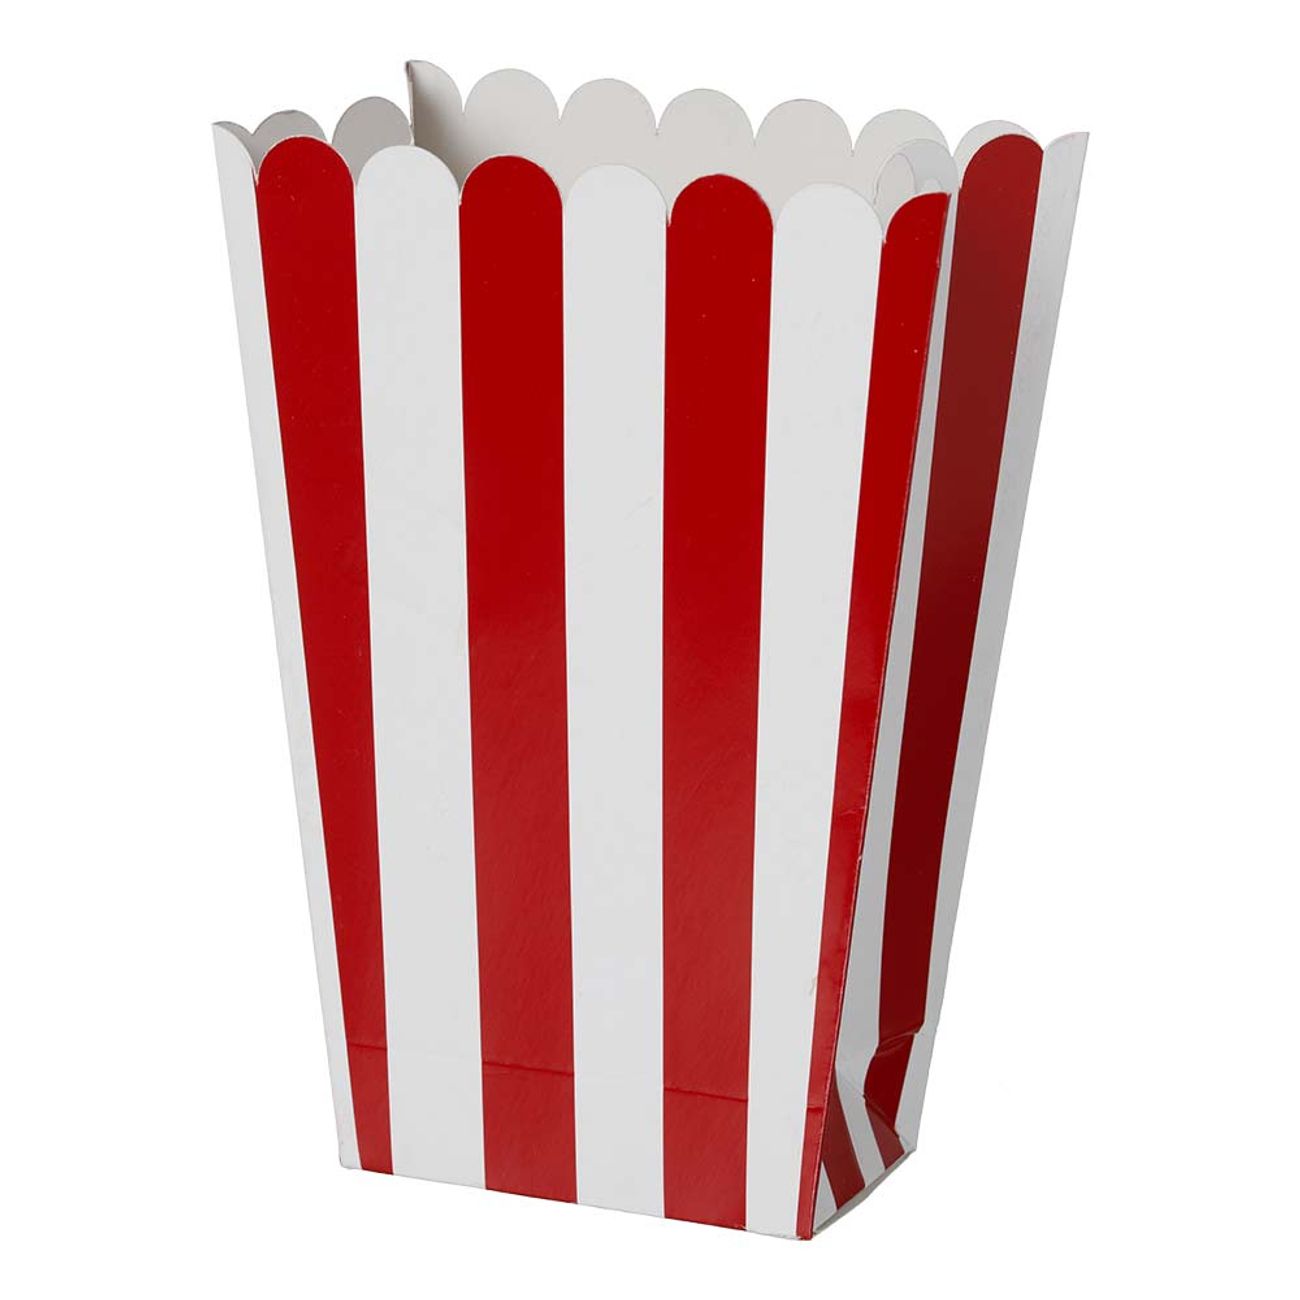 popcornbagare-rodvit-randiga-93297-1